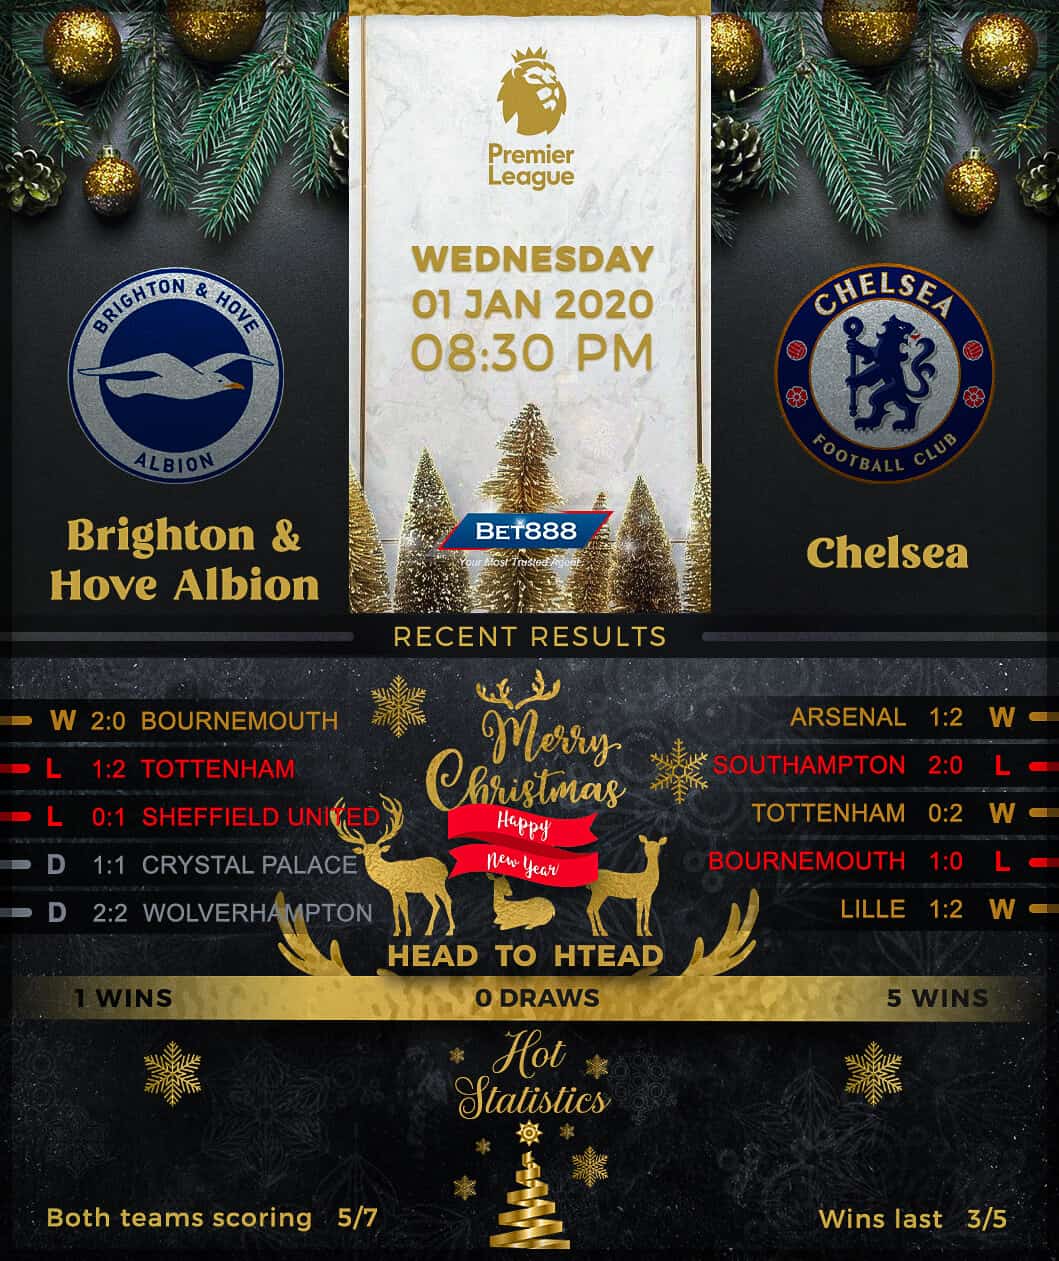 Brighton & Hove Albion vs Chelsea 01/01/20